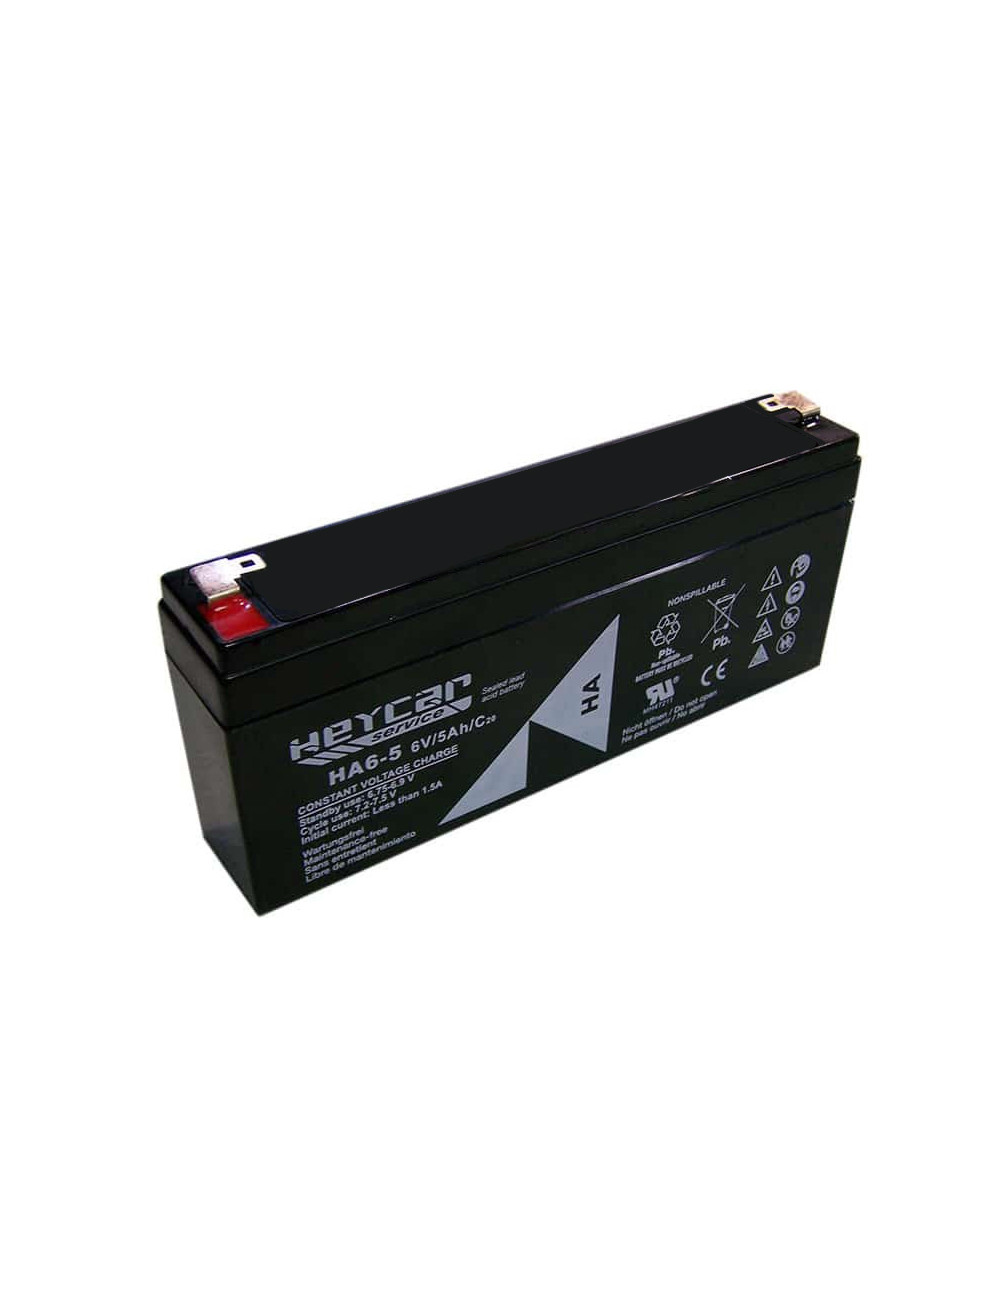 Batería para balanza digital Mettler Toledo de 6V 5Ah Heycar Service - HA6-5 -  - 8435231203173 - 1